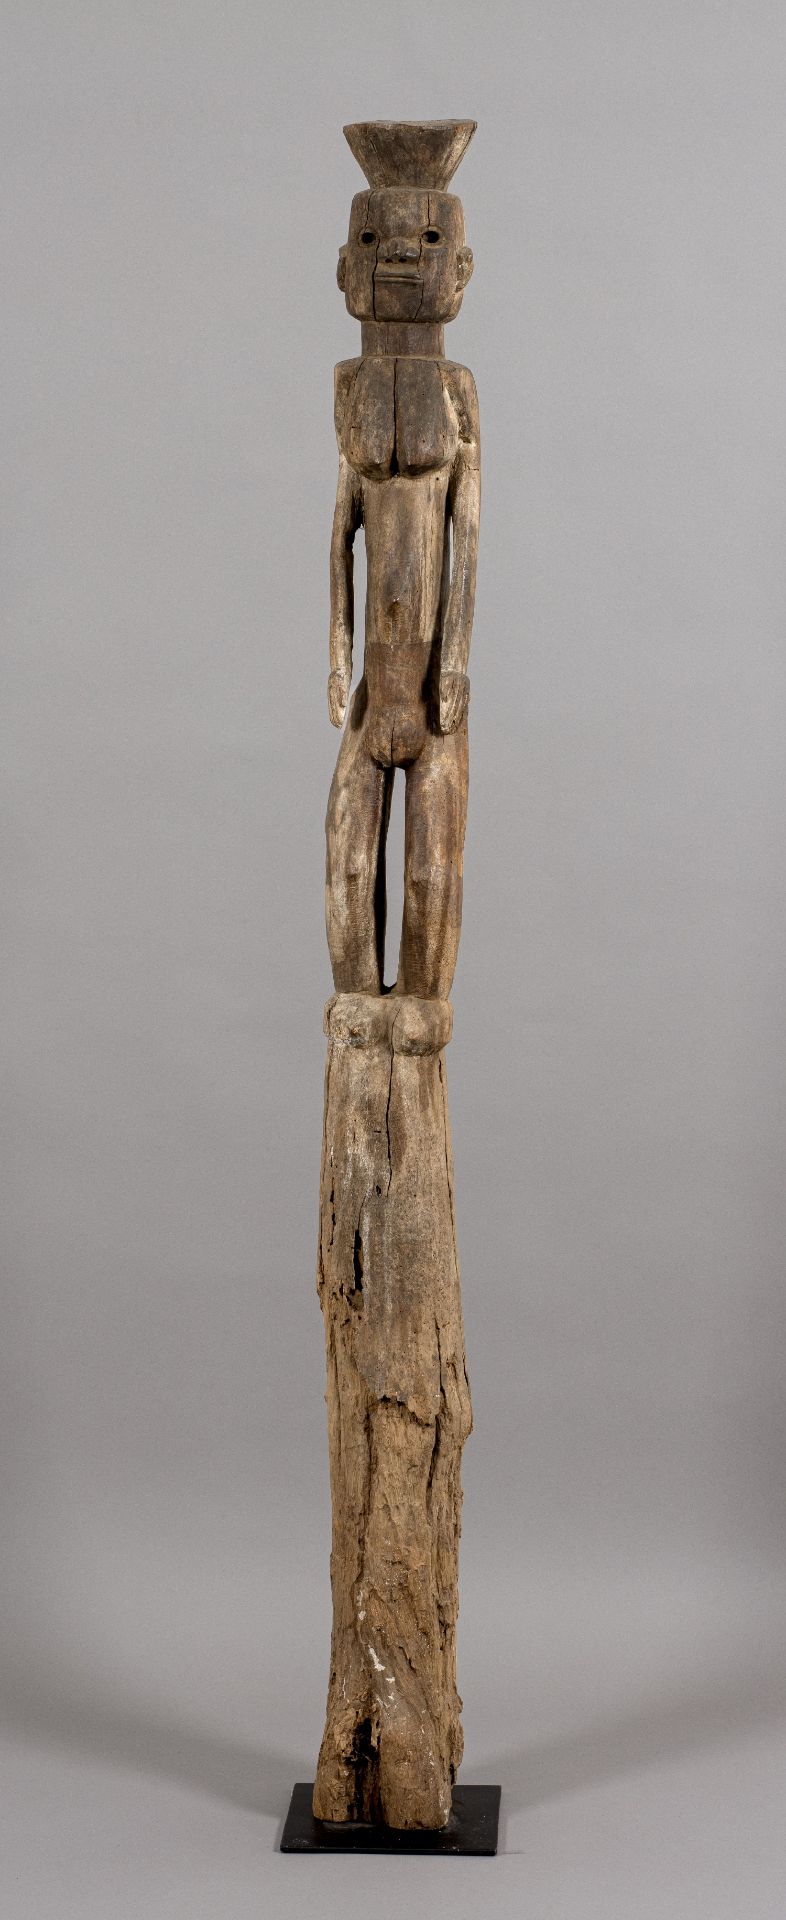 AFRIKANA | Figürliche Skulptur | Tiv, Nigeria